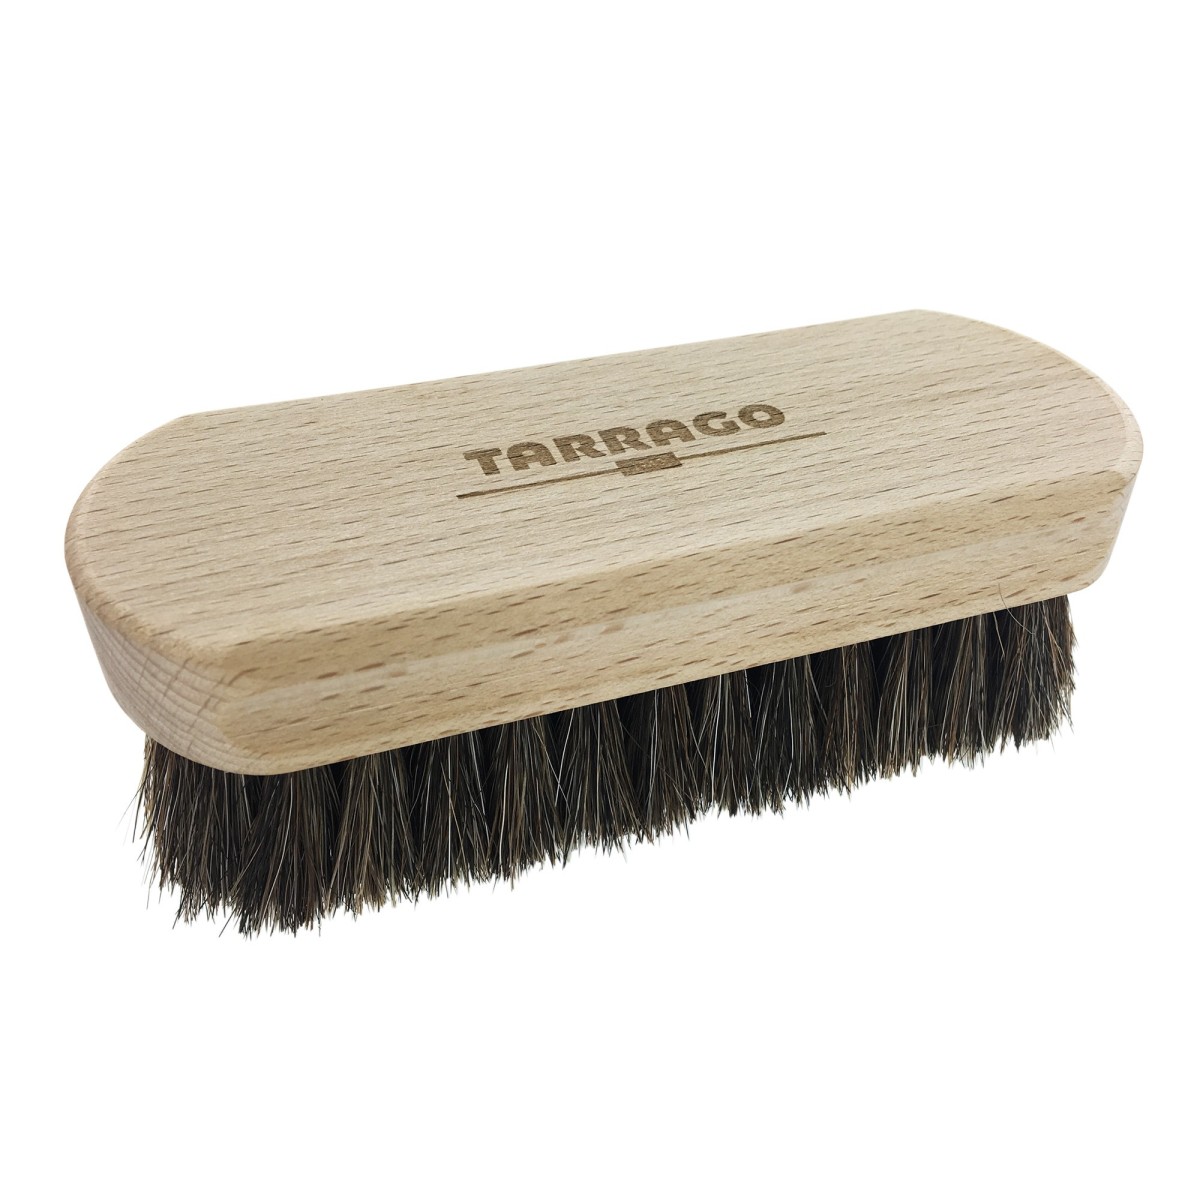 Cepillo de pelo de crin de madera cepillo para zapatos Classic Edition z2468 Cepillo de pulido para zapatos biped 